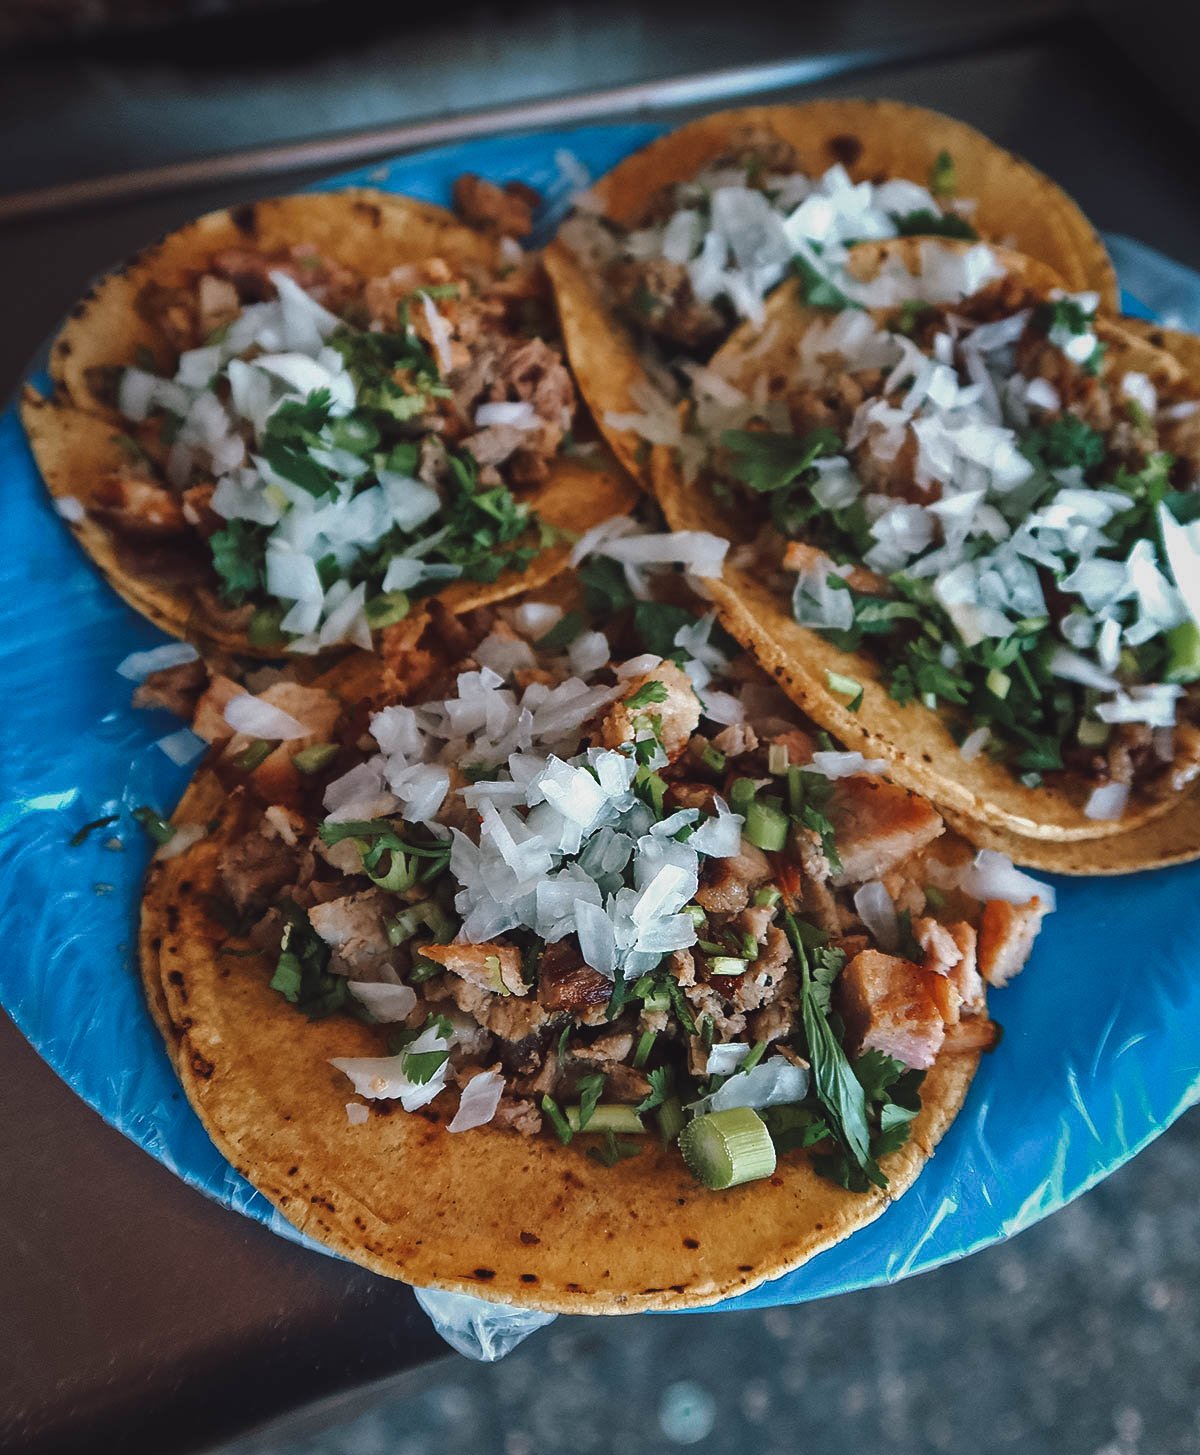 Tacos de suadero and tripa